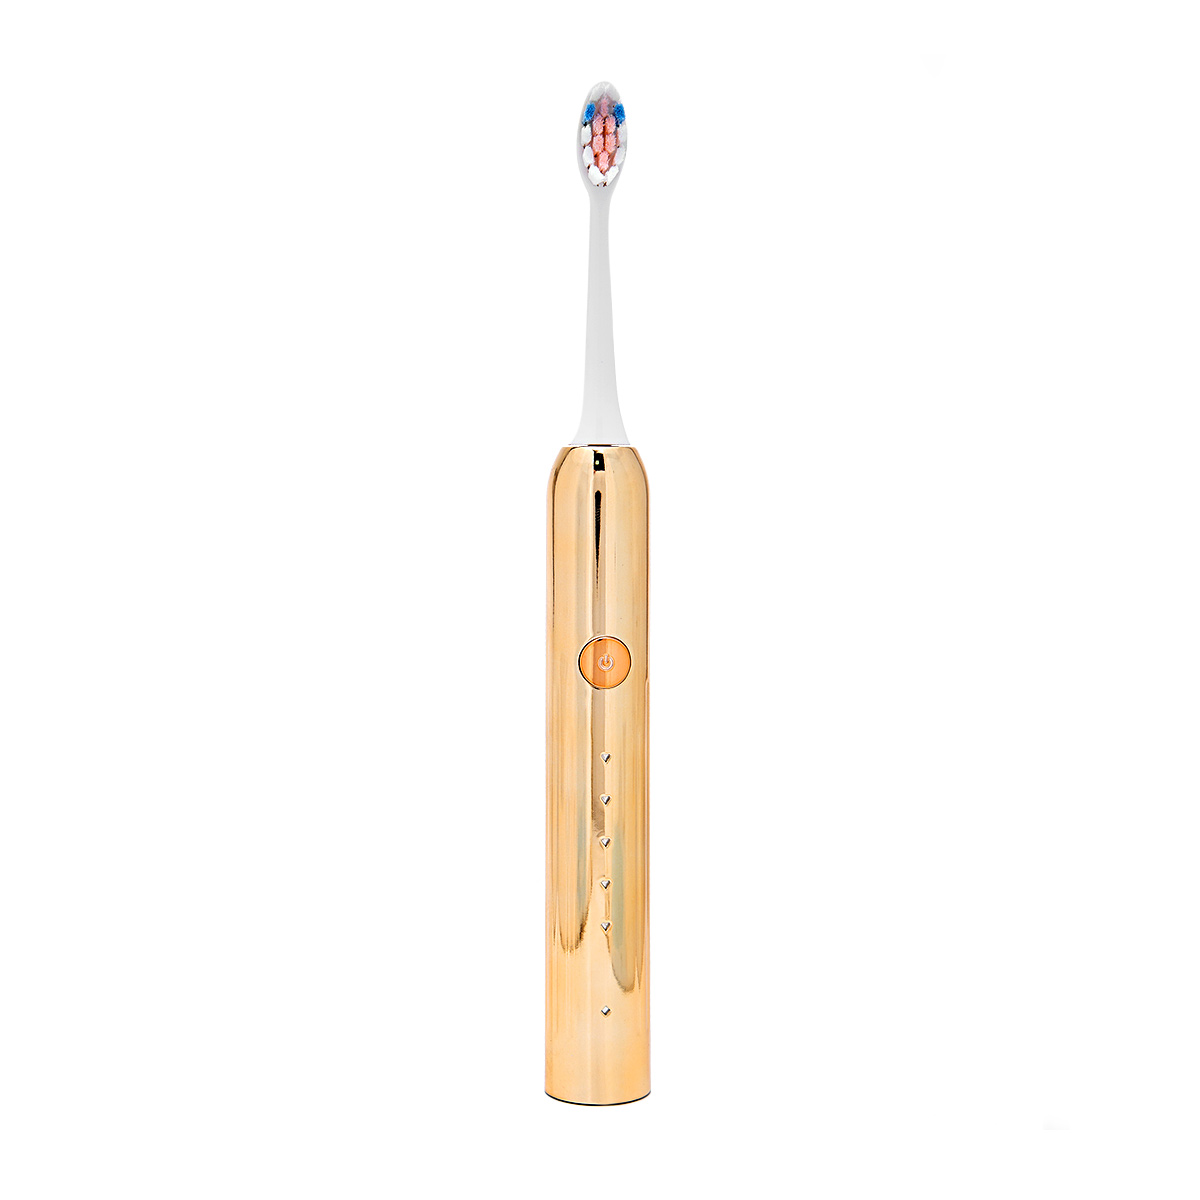 Электрическая зубная щетка Yojeong золотая со сменными насадками (3 насадки), Уход за полостью рта, Зубные щетки и аксессуары